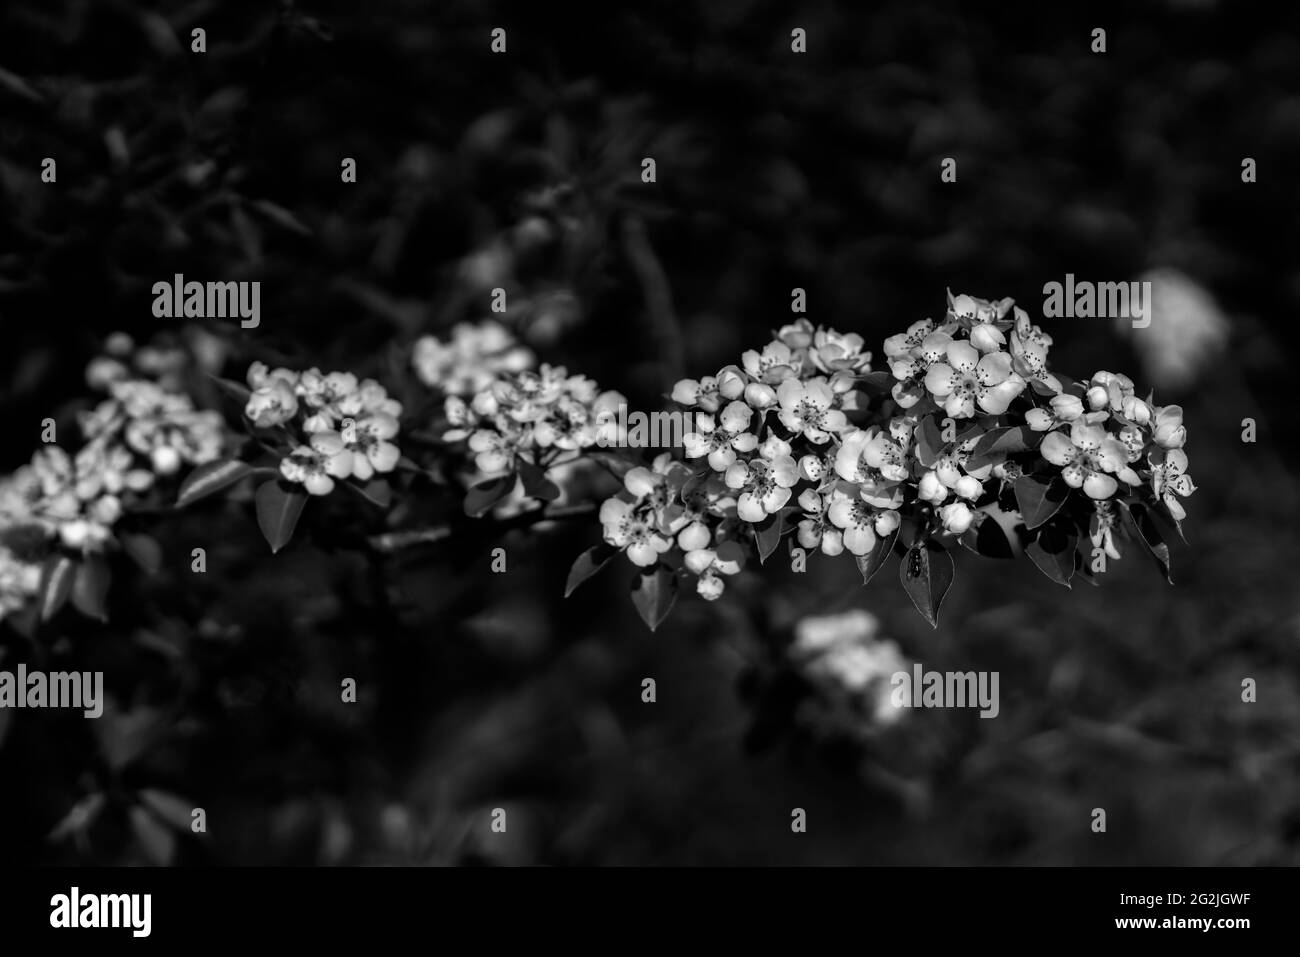 Jeune arbre à fleurs dans la forêt au printemps, netteté sélective, noir et blanc Banque D'Images